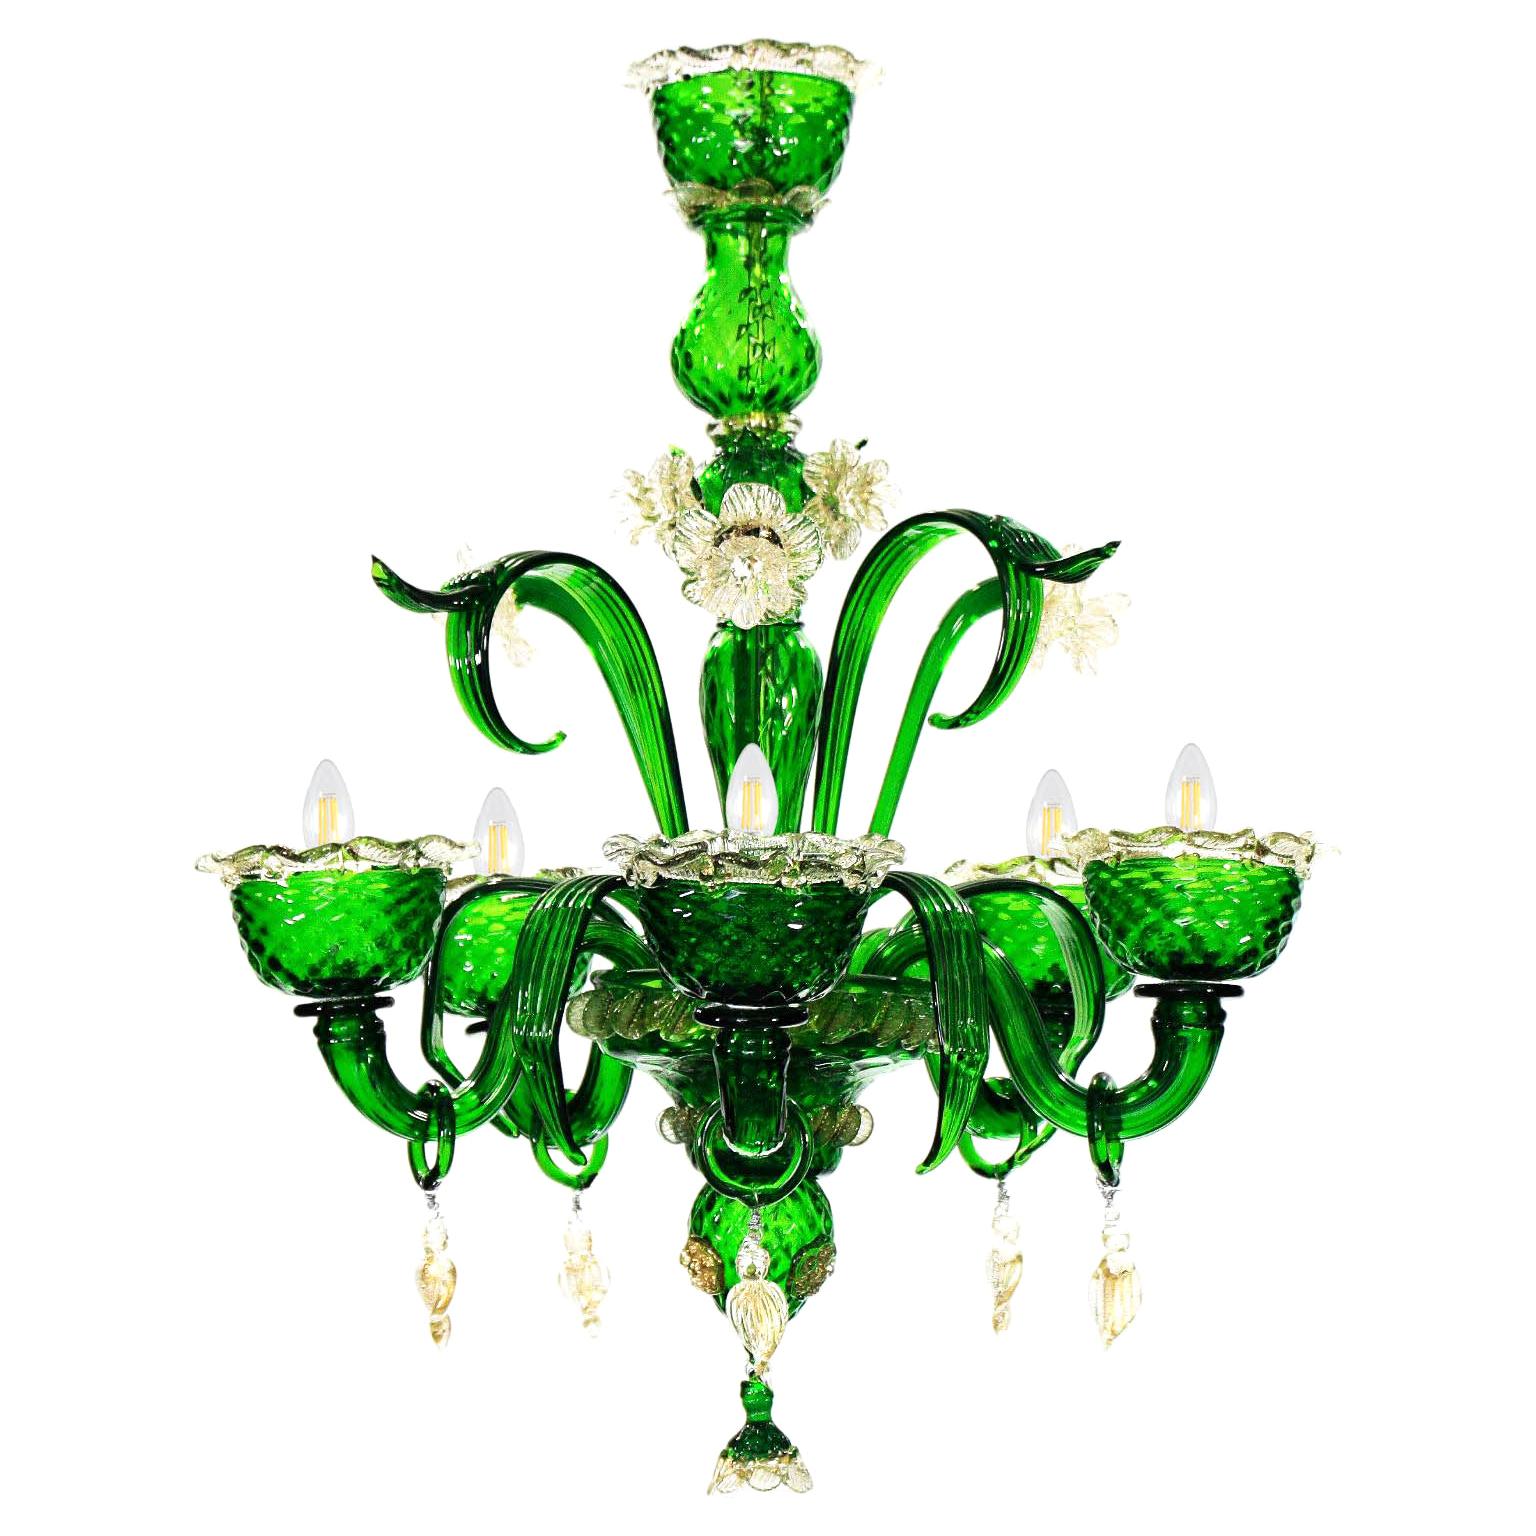 Kronleuchter mit 5 Armen aus grünem Muranoglas, Details aus Klar-Gold von Multiforme